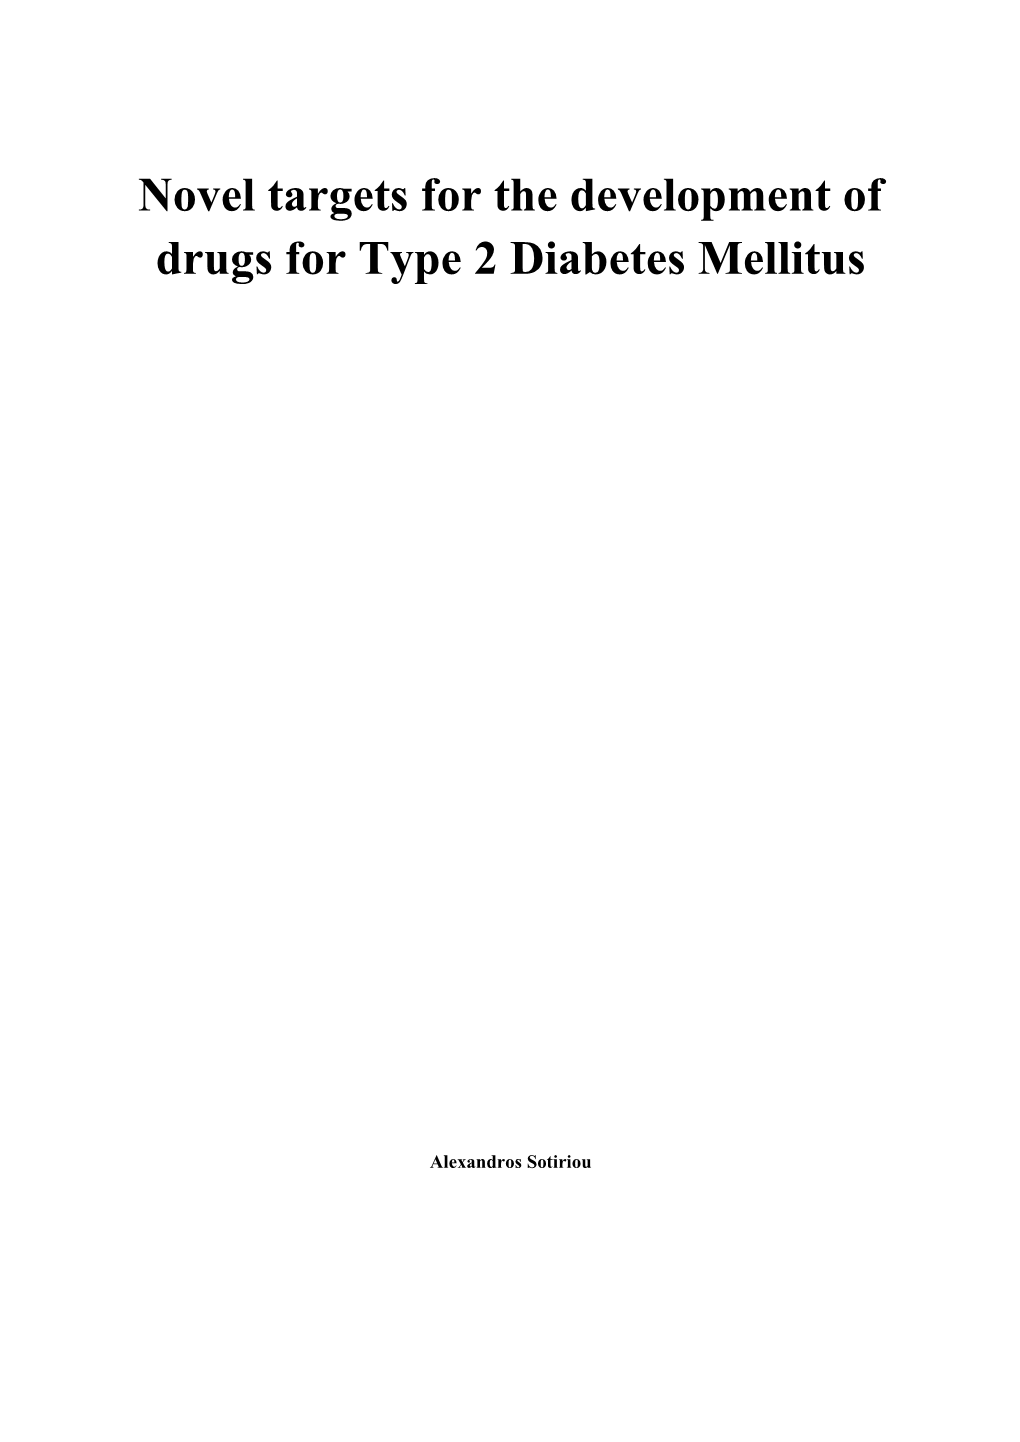 Novel Targets for the Development of Drugs for Type 2 Diabetes Mellitus